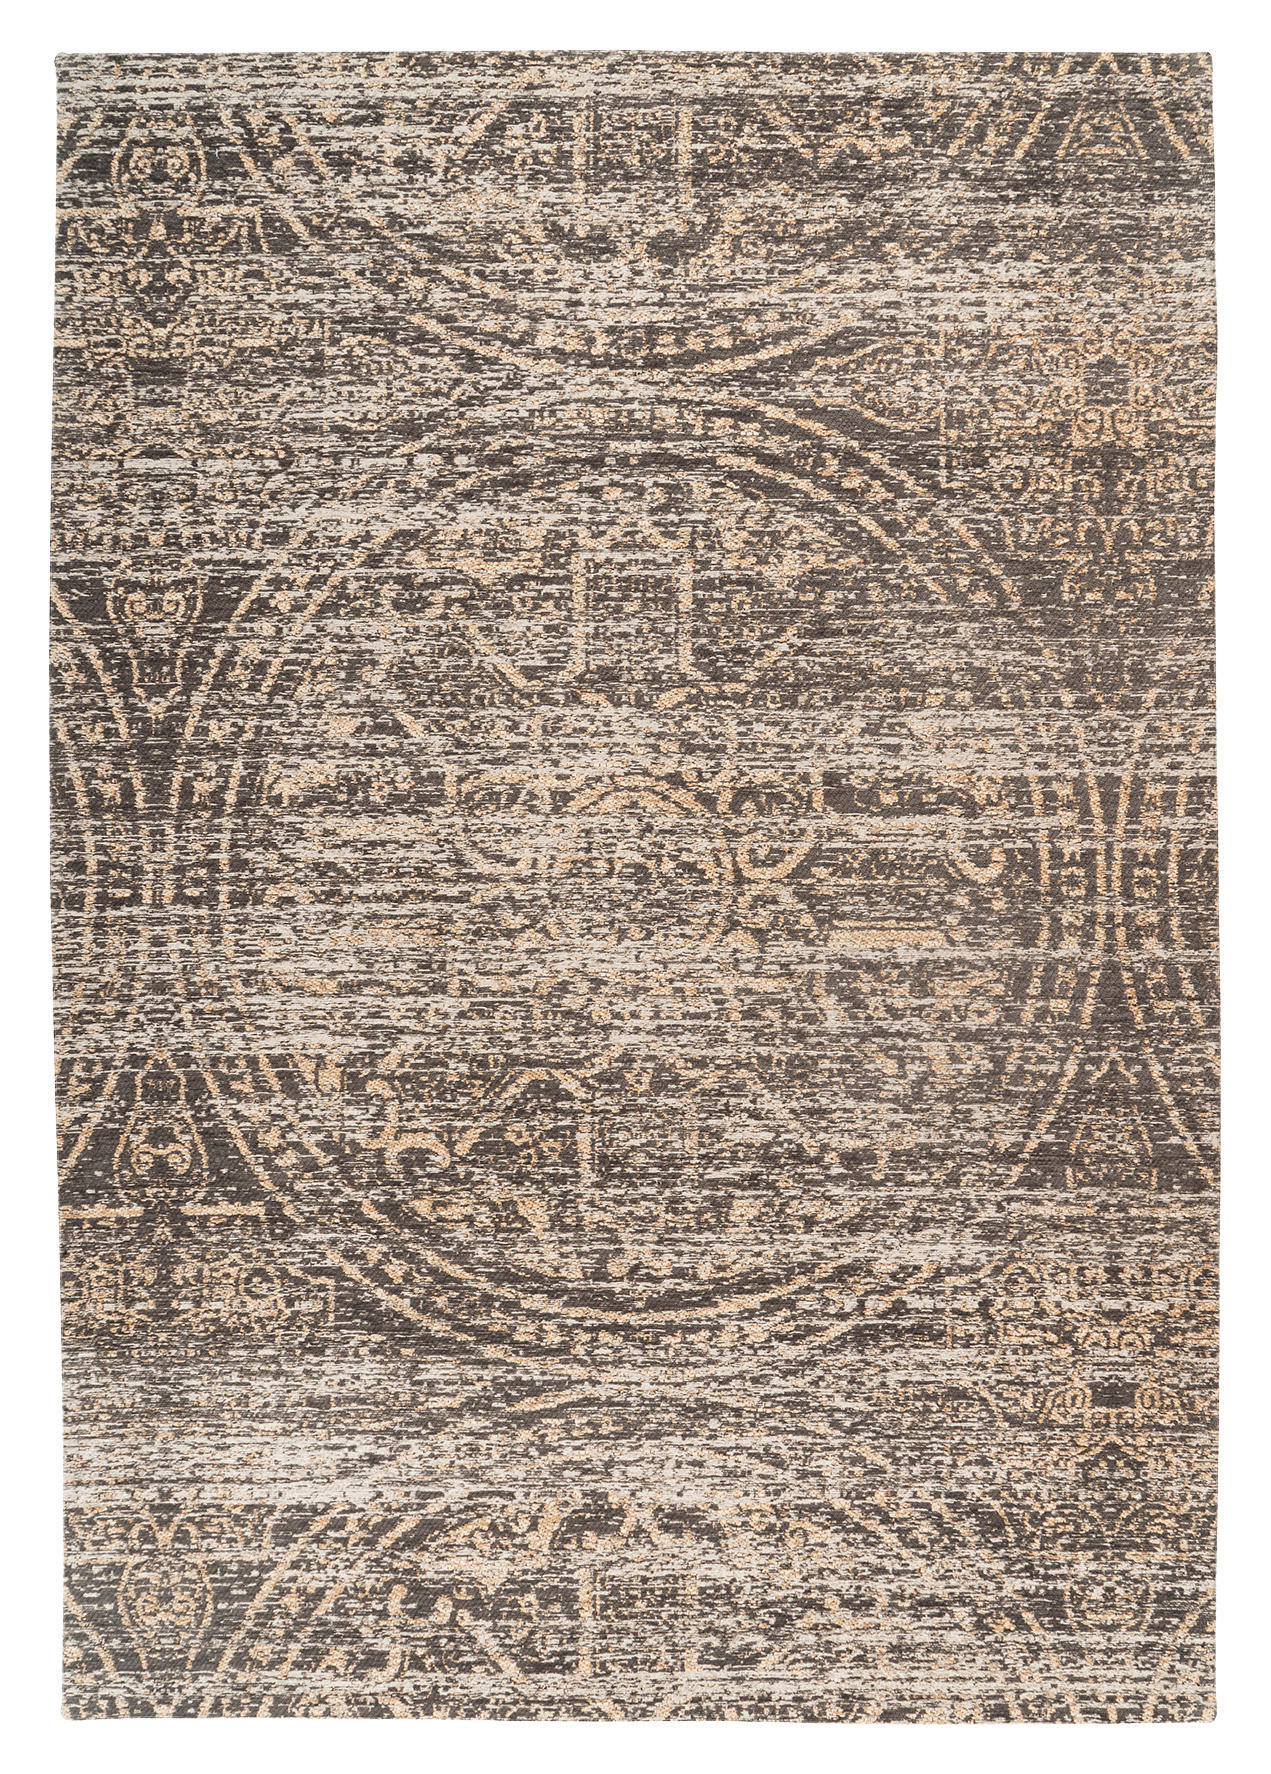 TEPPICH 80/150 cm  - Beige, KONVENTIONELL, Textil (80/150cm)